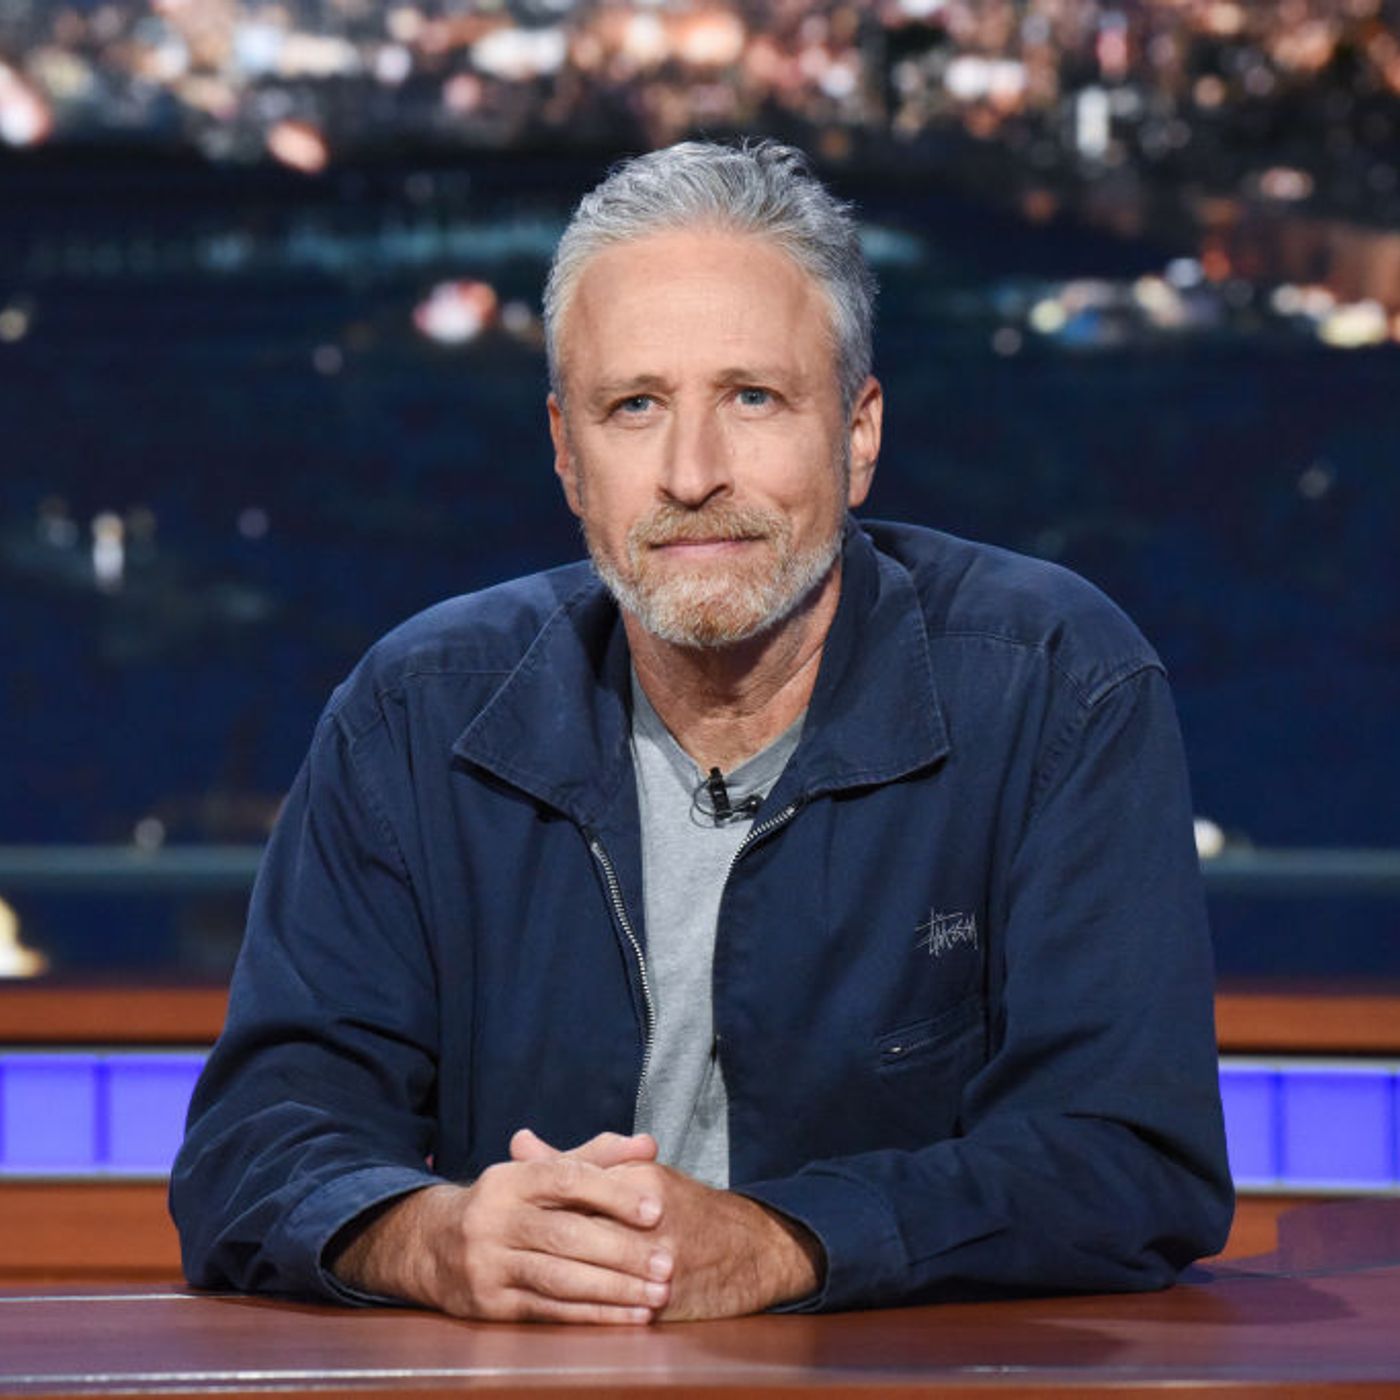 Will Jon Stewart still be funny?